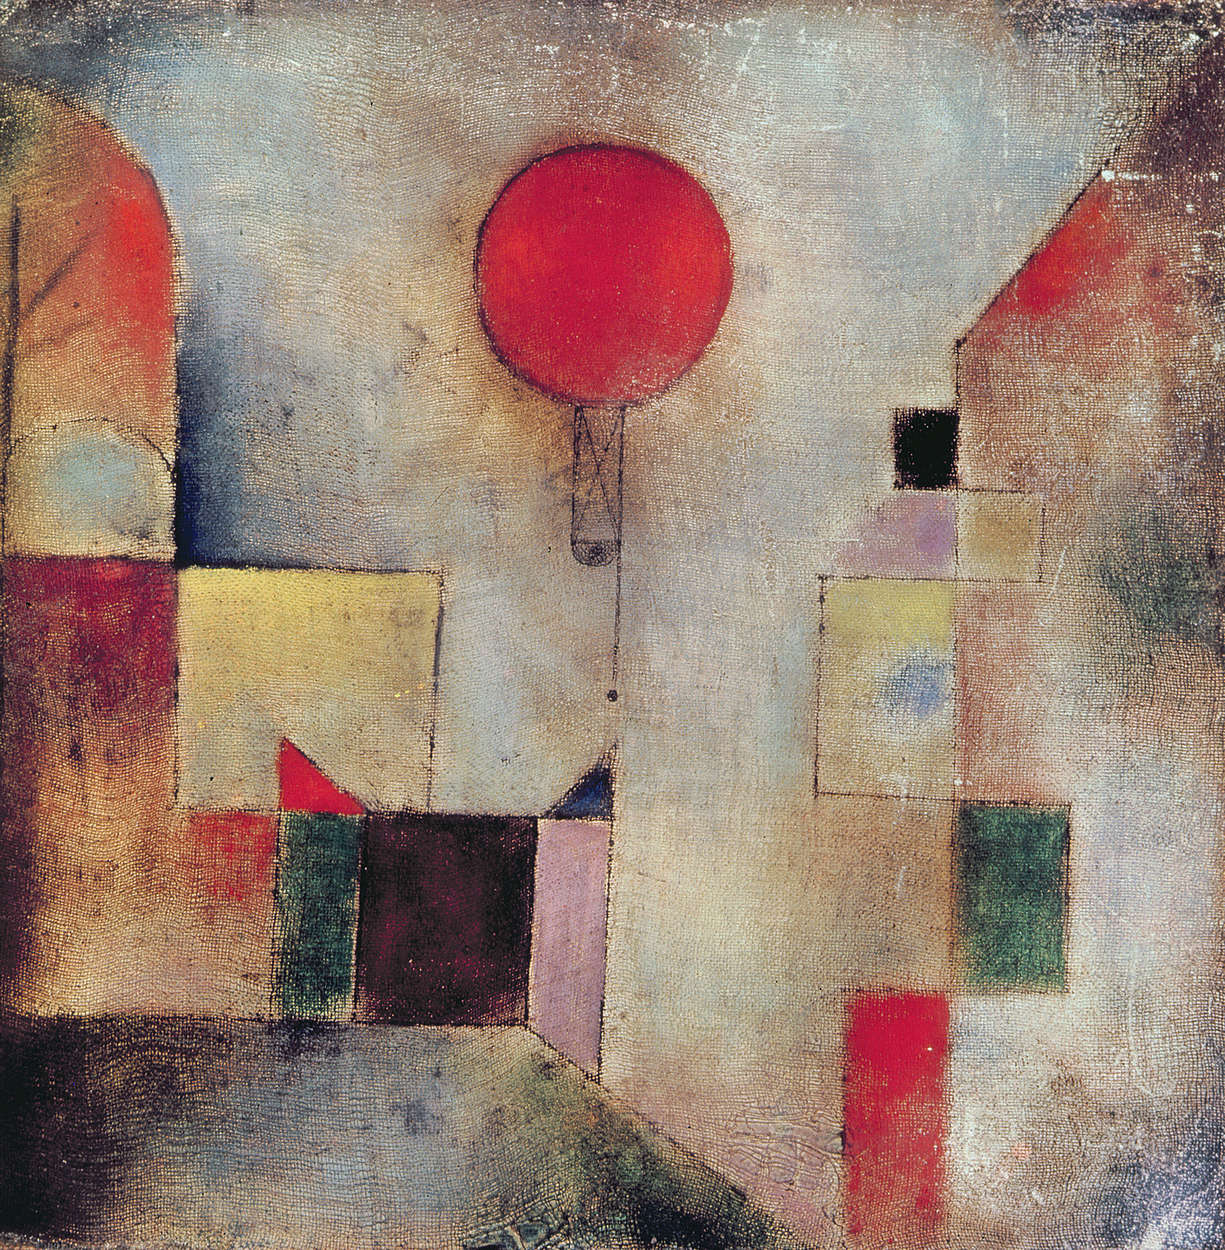             Fotomurali "Palloncino rosso" di Paul Klee
        